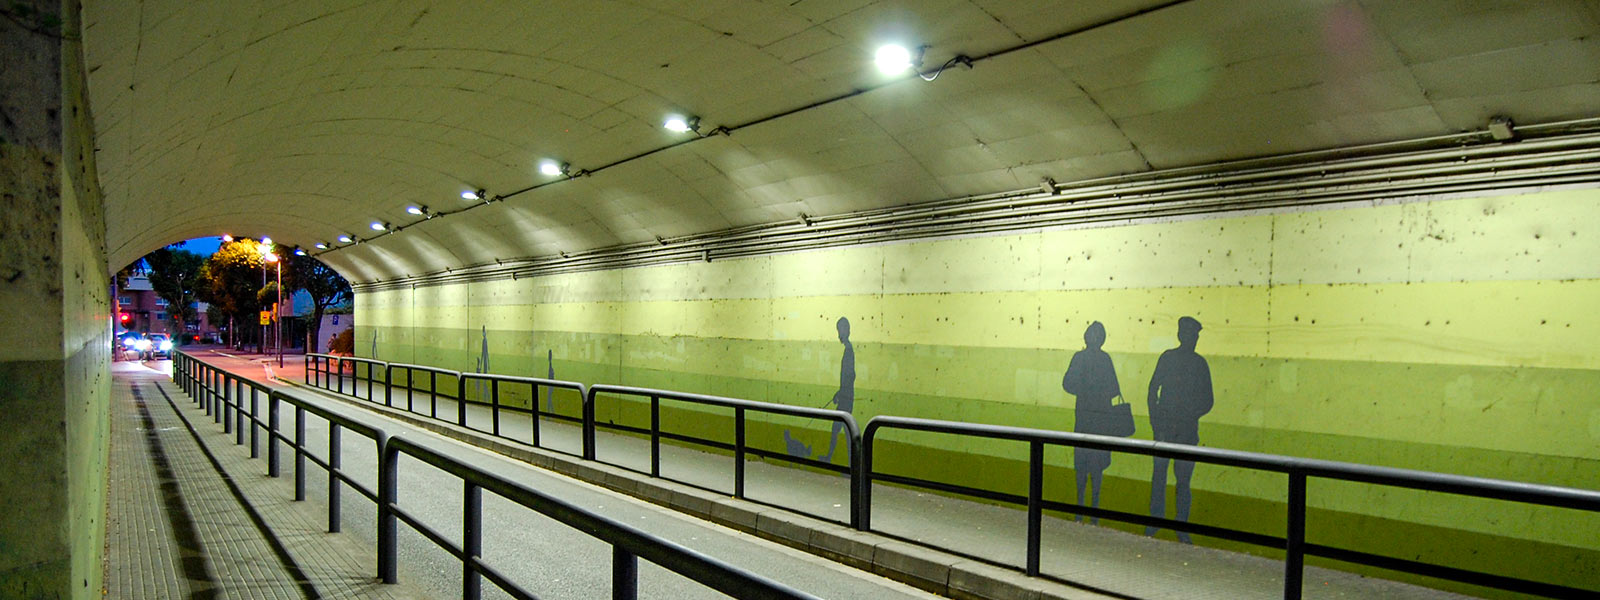 SANT JOAN DESPÍ
IL·LUMINACIÓ TUNELS
La lluminària Milan S il·lumina els passos subterranis